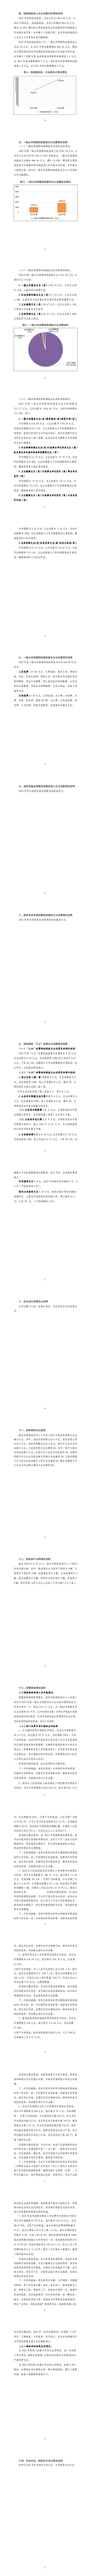 705001荆州市招商促进中心（本级）2022年度部门决算(2)_01.jpg